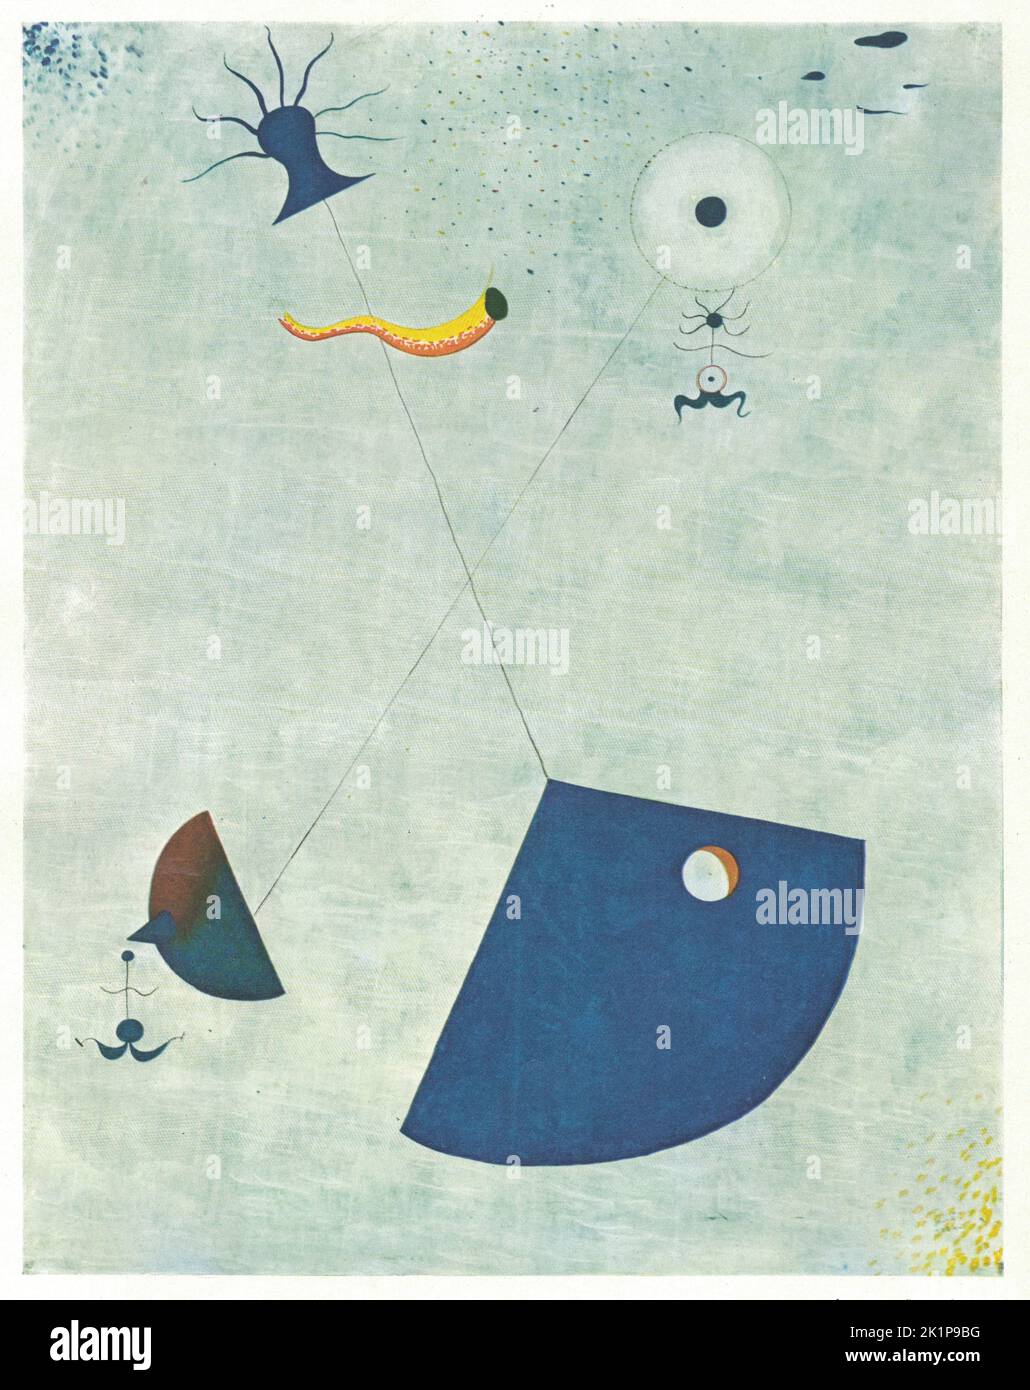 Materné (maternité), 1924, huile sur toile. Peinture par Joan Miró. Joan Miró (20 avril 1893 – 25 décembre 1983) est un peintre, sculpteur et céramiste espagnol né à Barcelone. Un musée dédié à son œuvre, la Fundació Joan Miró, a été établi dans sa ville natale de Barcelone en 1975, et un autre, la Fundació Pilar i Joan Miró, a été établi dans sa ville adoptive de Palma en 1981. Ses travaux, qui ont reçu une renommée internationale, ont été interprétés comme du surréalisme, mais avec un style personnel, parfois aussi en train de se transformer en Fauvisme et en Expressionisme. Il était remarquable pour son intérêt pour l'inconscient o Banque D'Images